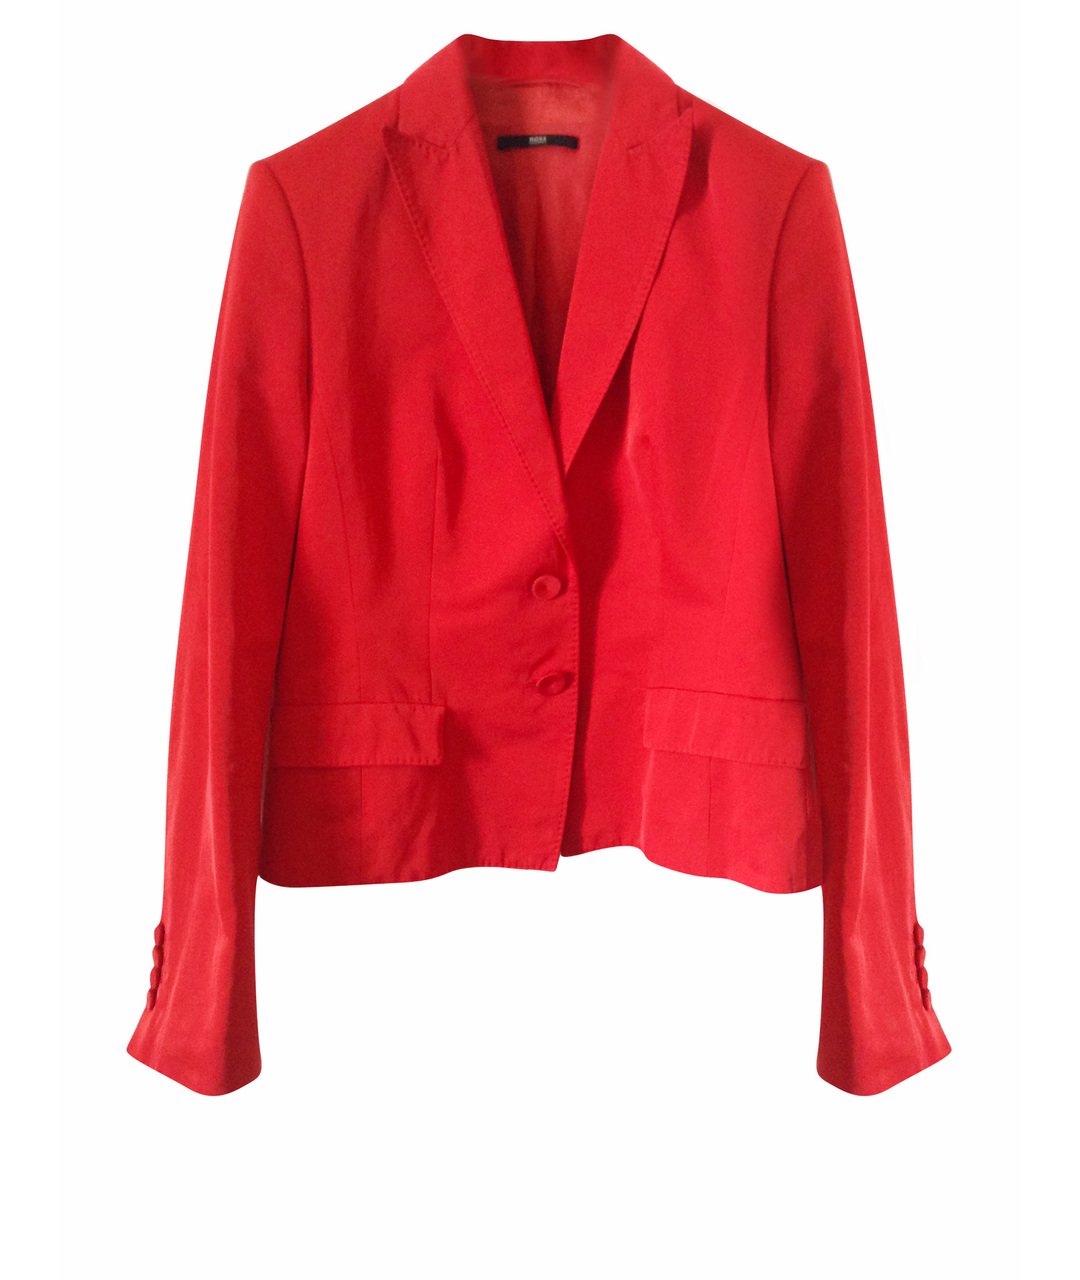 HUGO BOSS Красный жакет/пиджак, фото 1